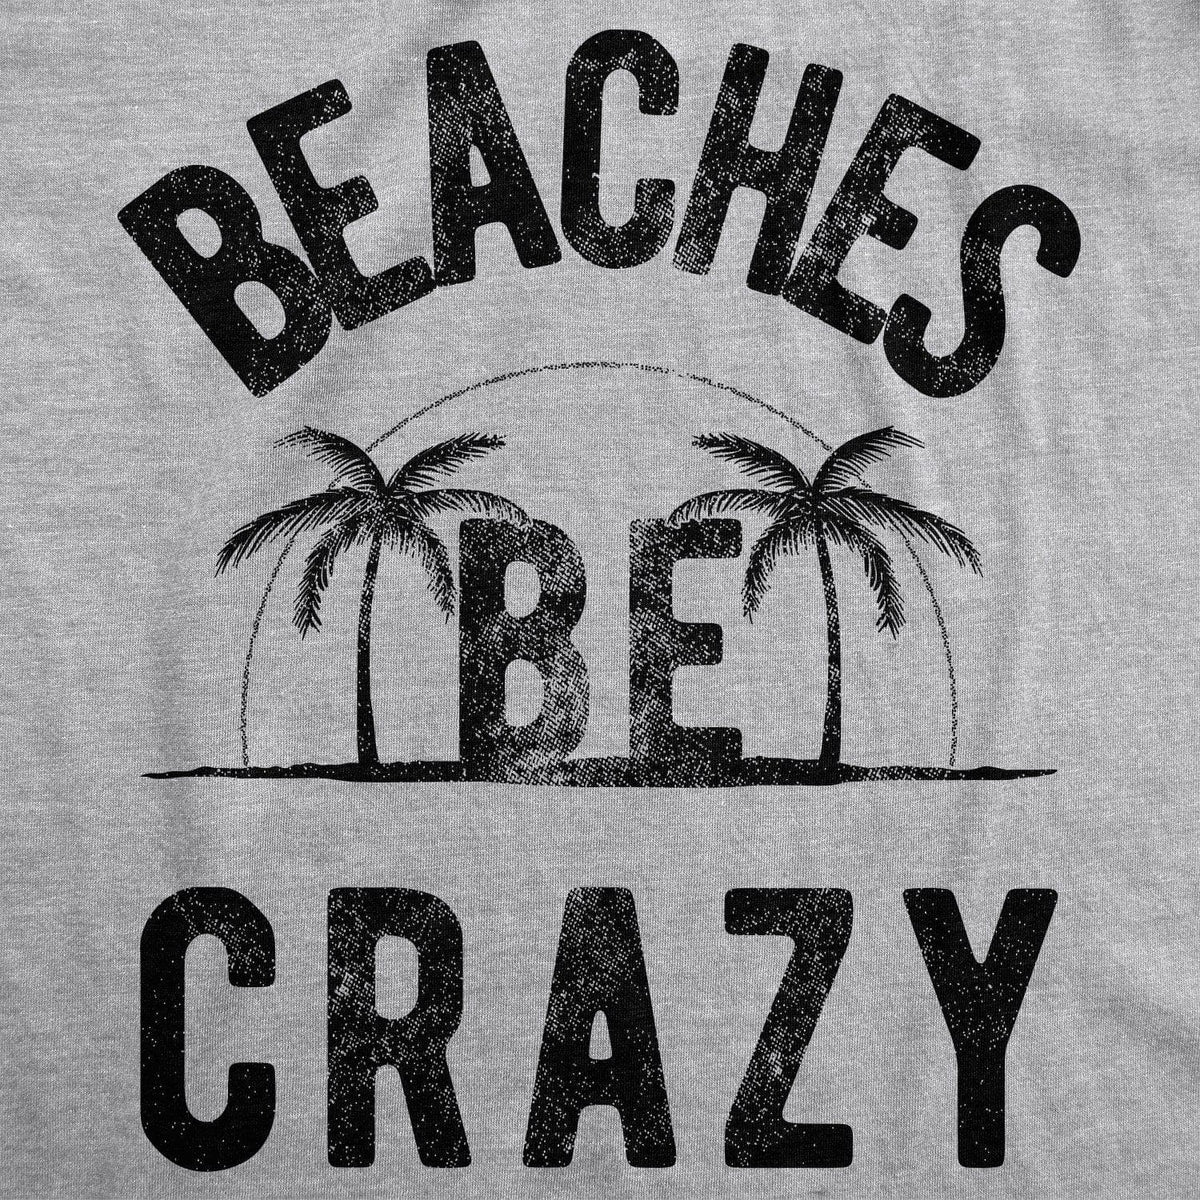 Beaches Be Crazy Men&#39;s Tshirt  -  Crazy Dog T-Shirts